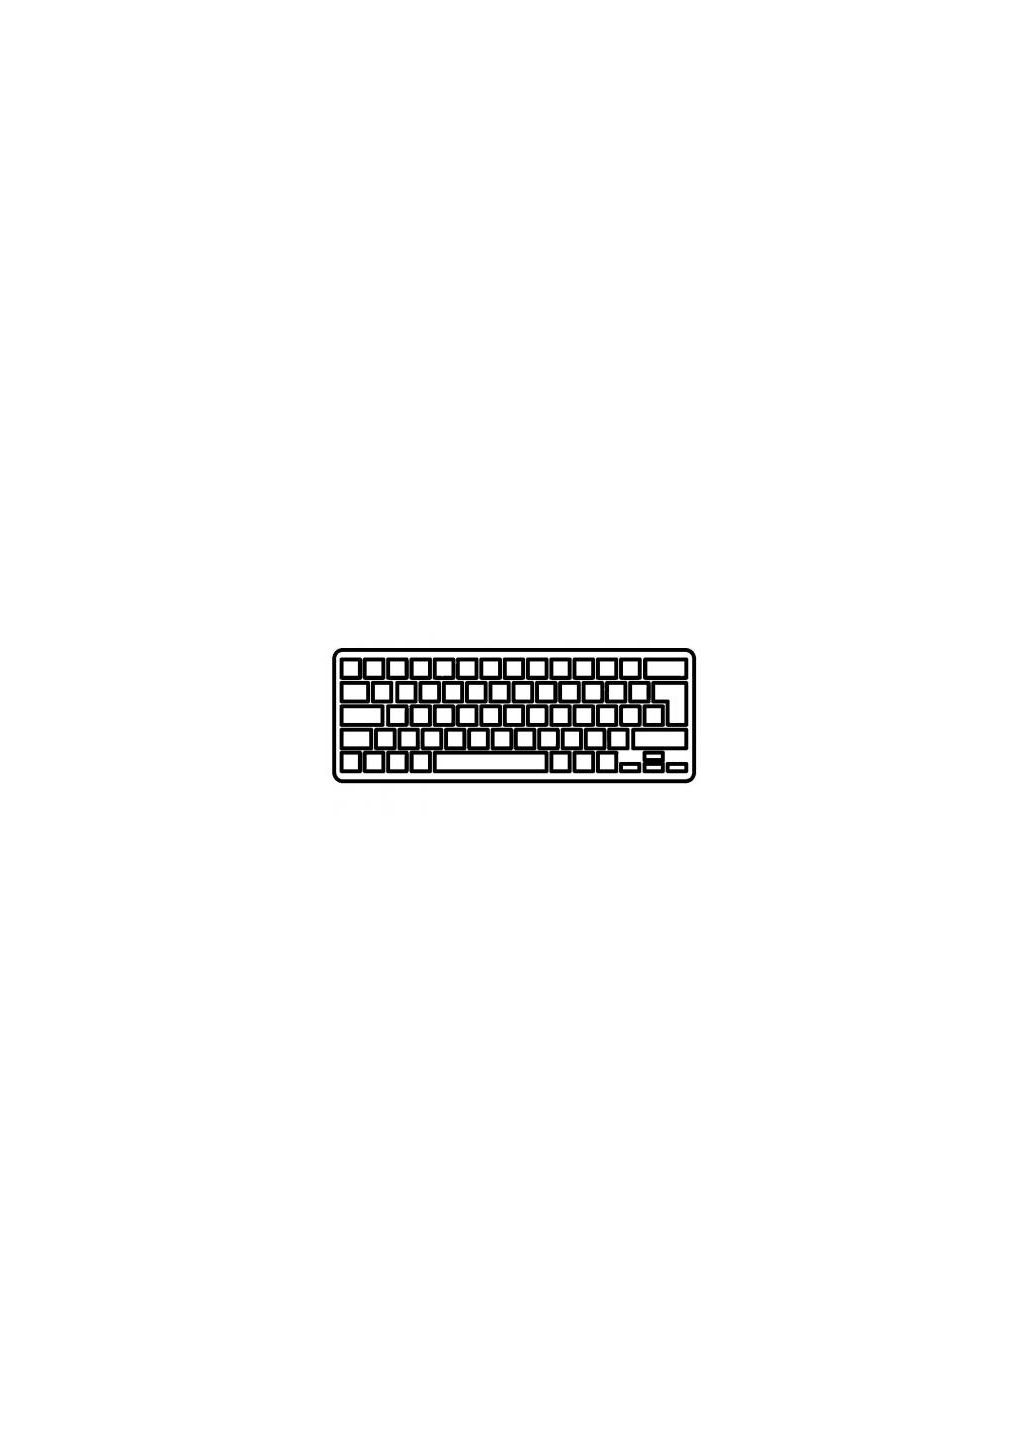 Клавиатура ноутбука Mini 2103000 Series черная без рамки RU (A43780) HP mini 210-3000 series черная без рамки ru (276707625)